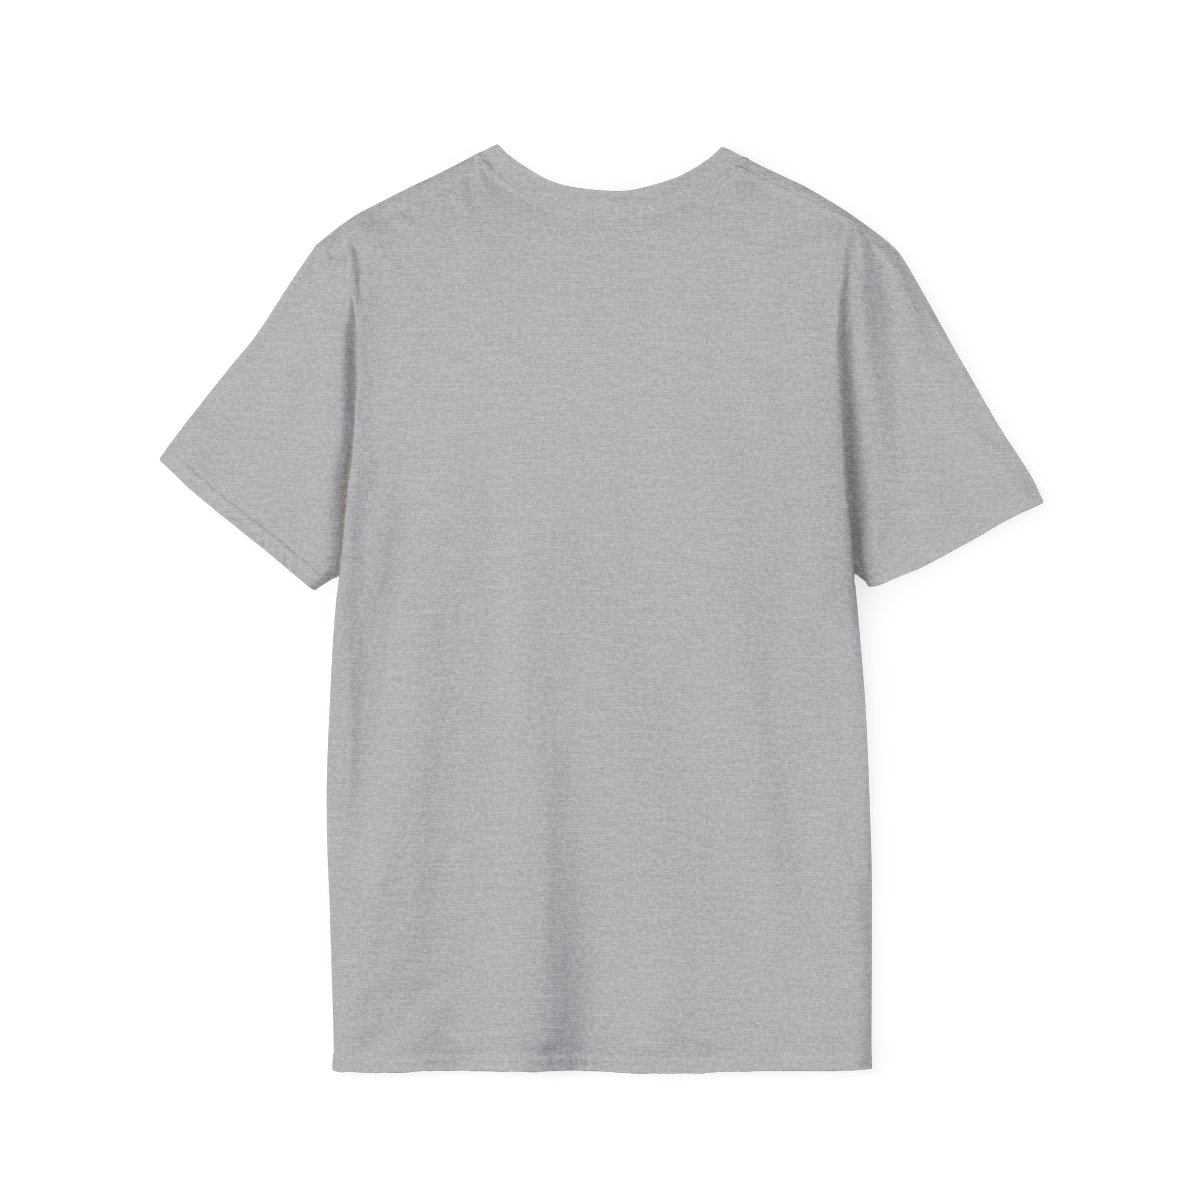 UNRIG - White/Light - T-Shirt - Unisex Softstyle product thumbnail image